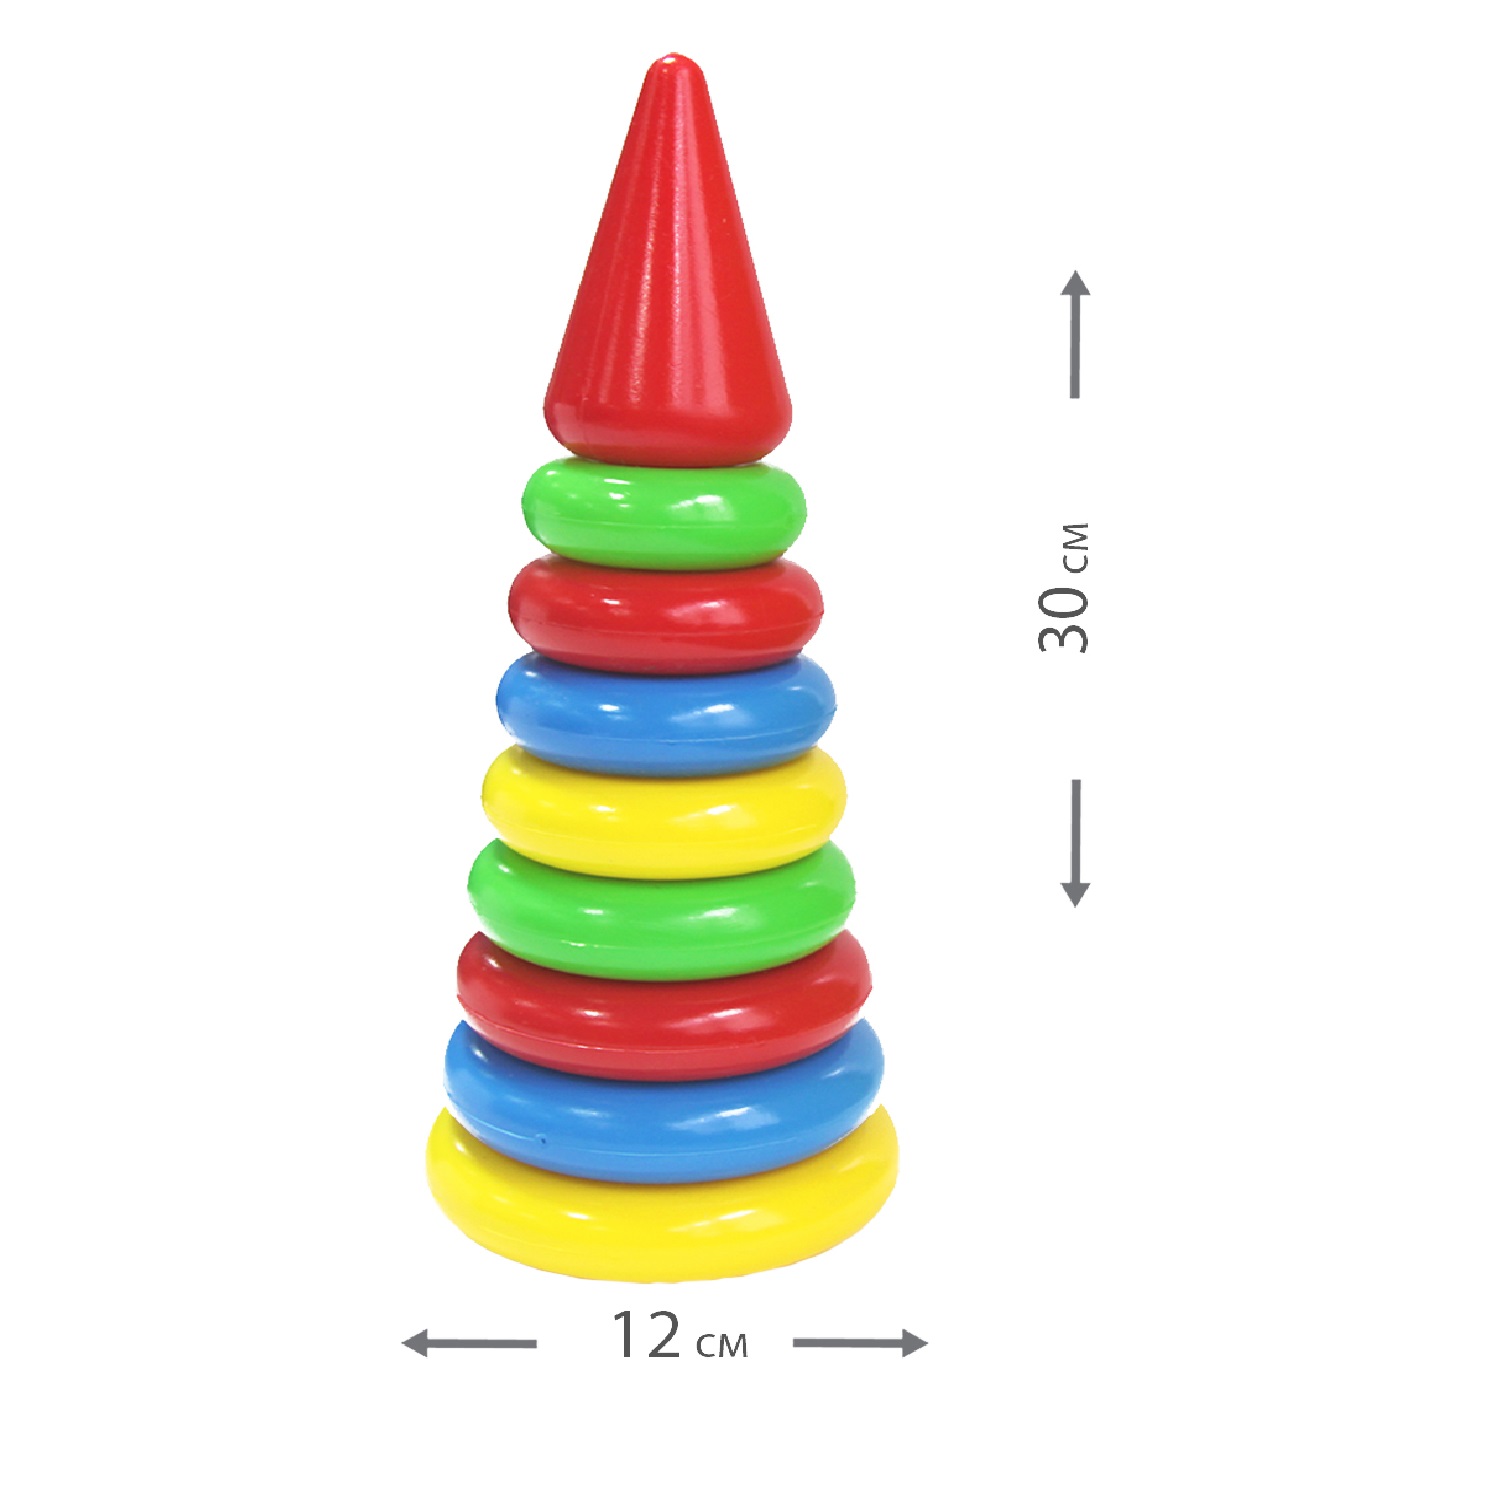 Пирамидка детская развивающая Green Plast 8 колец с наконечником обучающая игрушка - фото 4